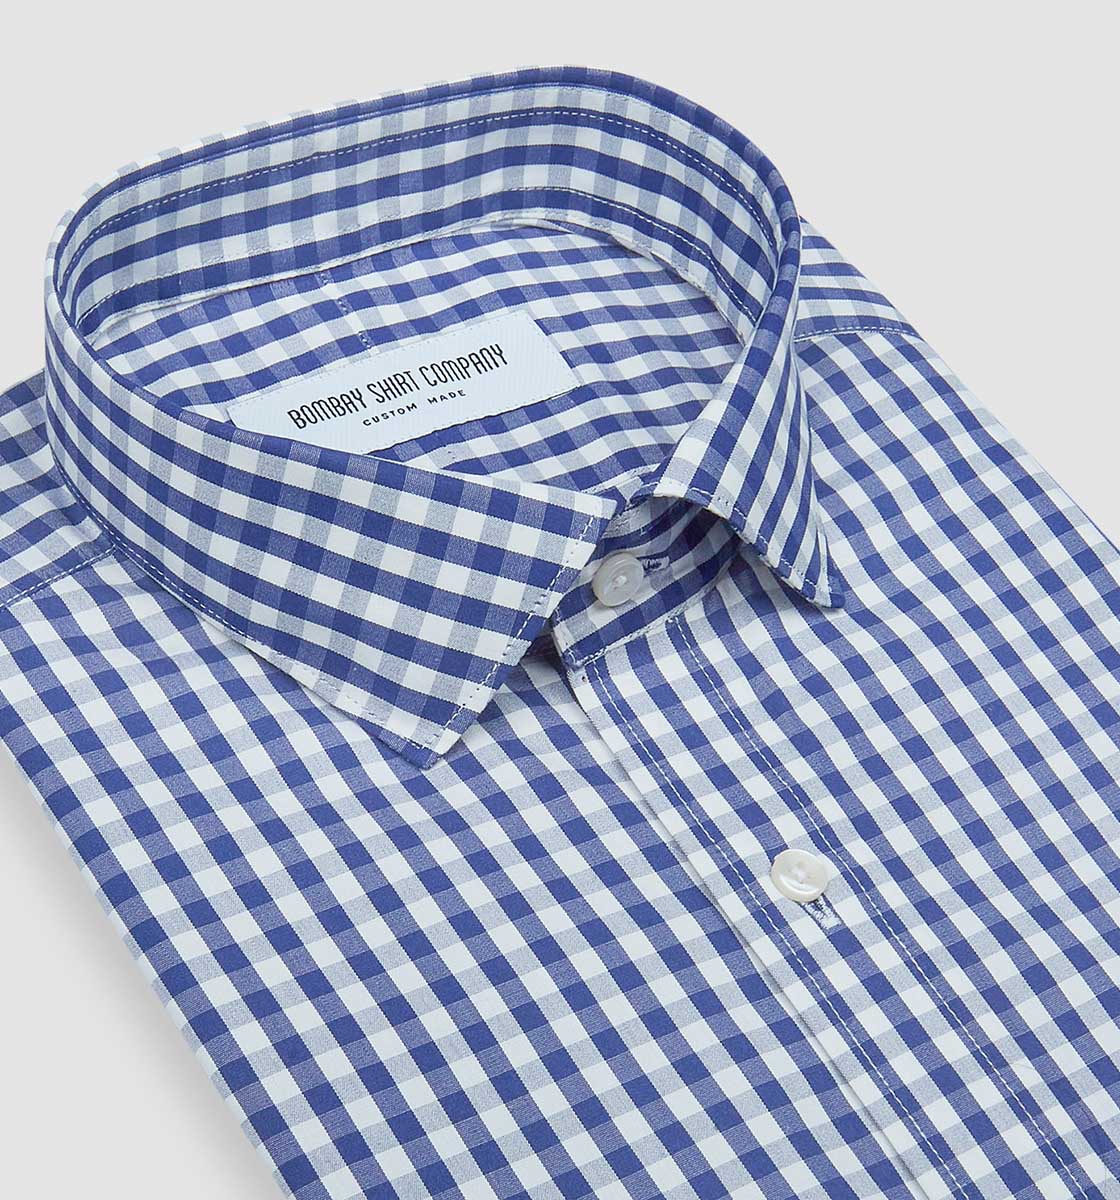 Buy Blue White Check Shirts For Men | Men's Blue White Check Shirts ...